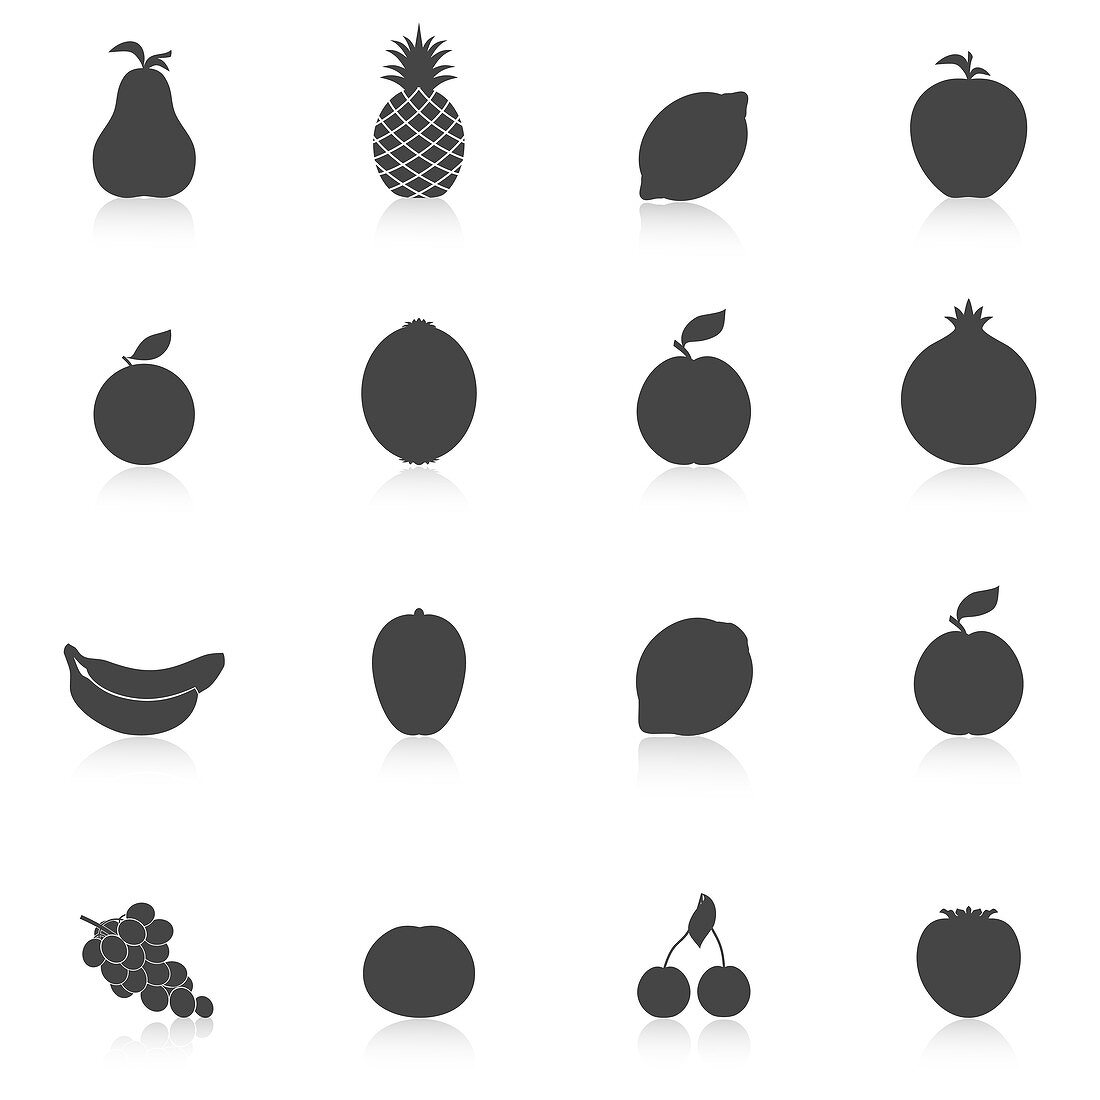 Fruit icons, illustration